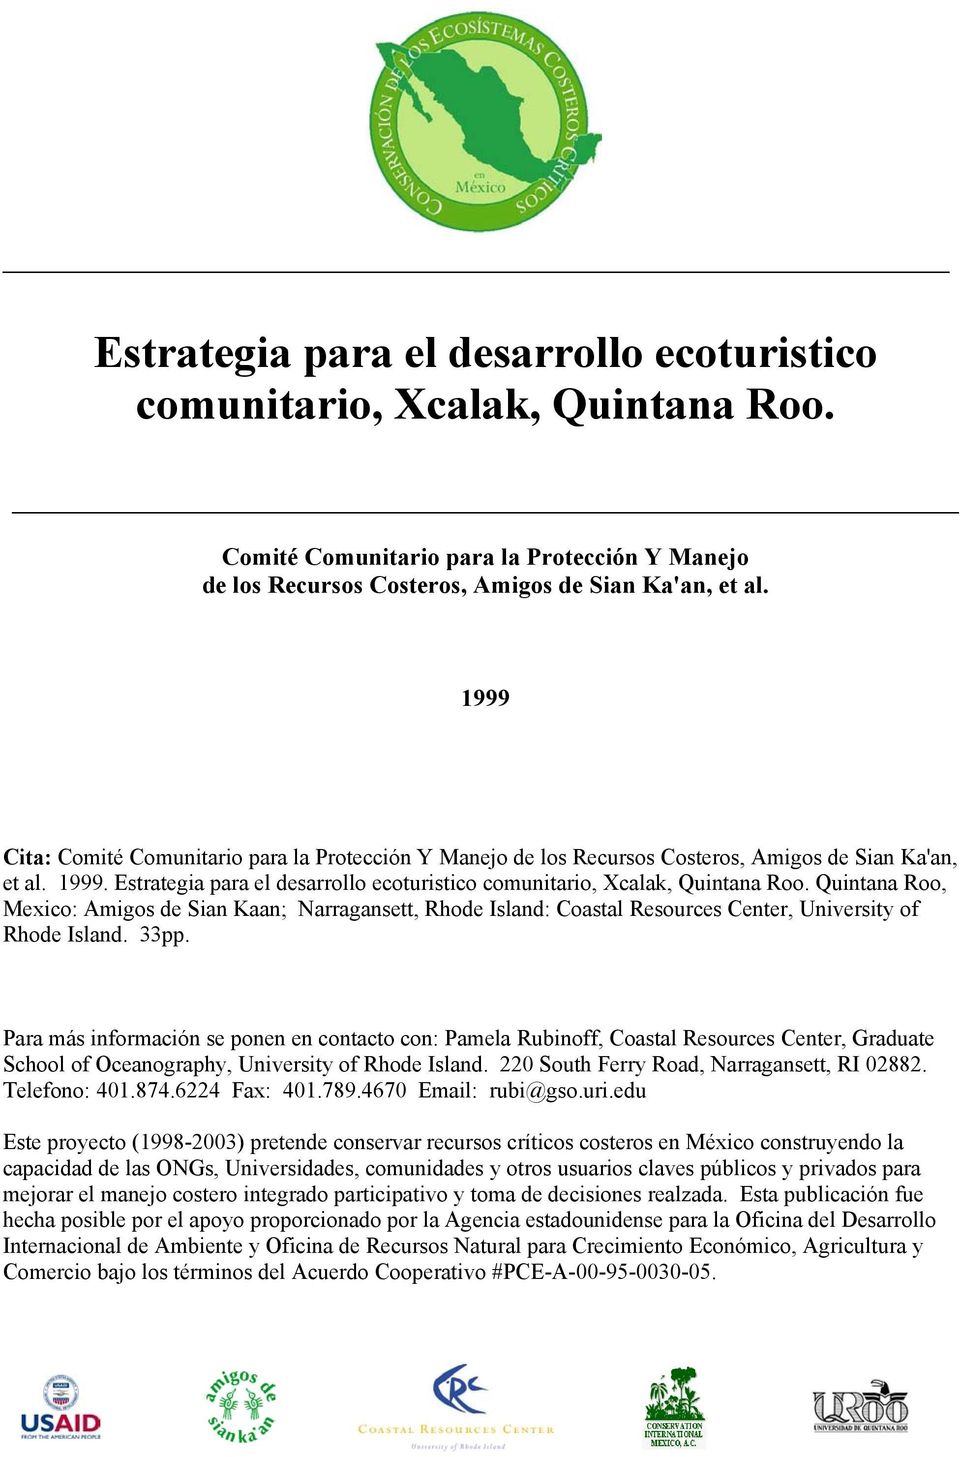 Quintana Roo, Mexico: Amigos de Sian Kaan; Narragansett, Rhode Island: Coastal Resources Center, University of Rhode Island. 33pp.